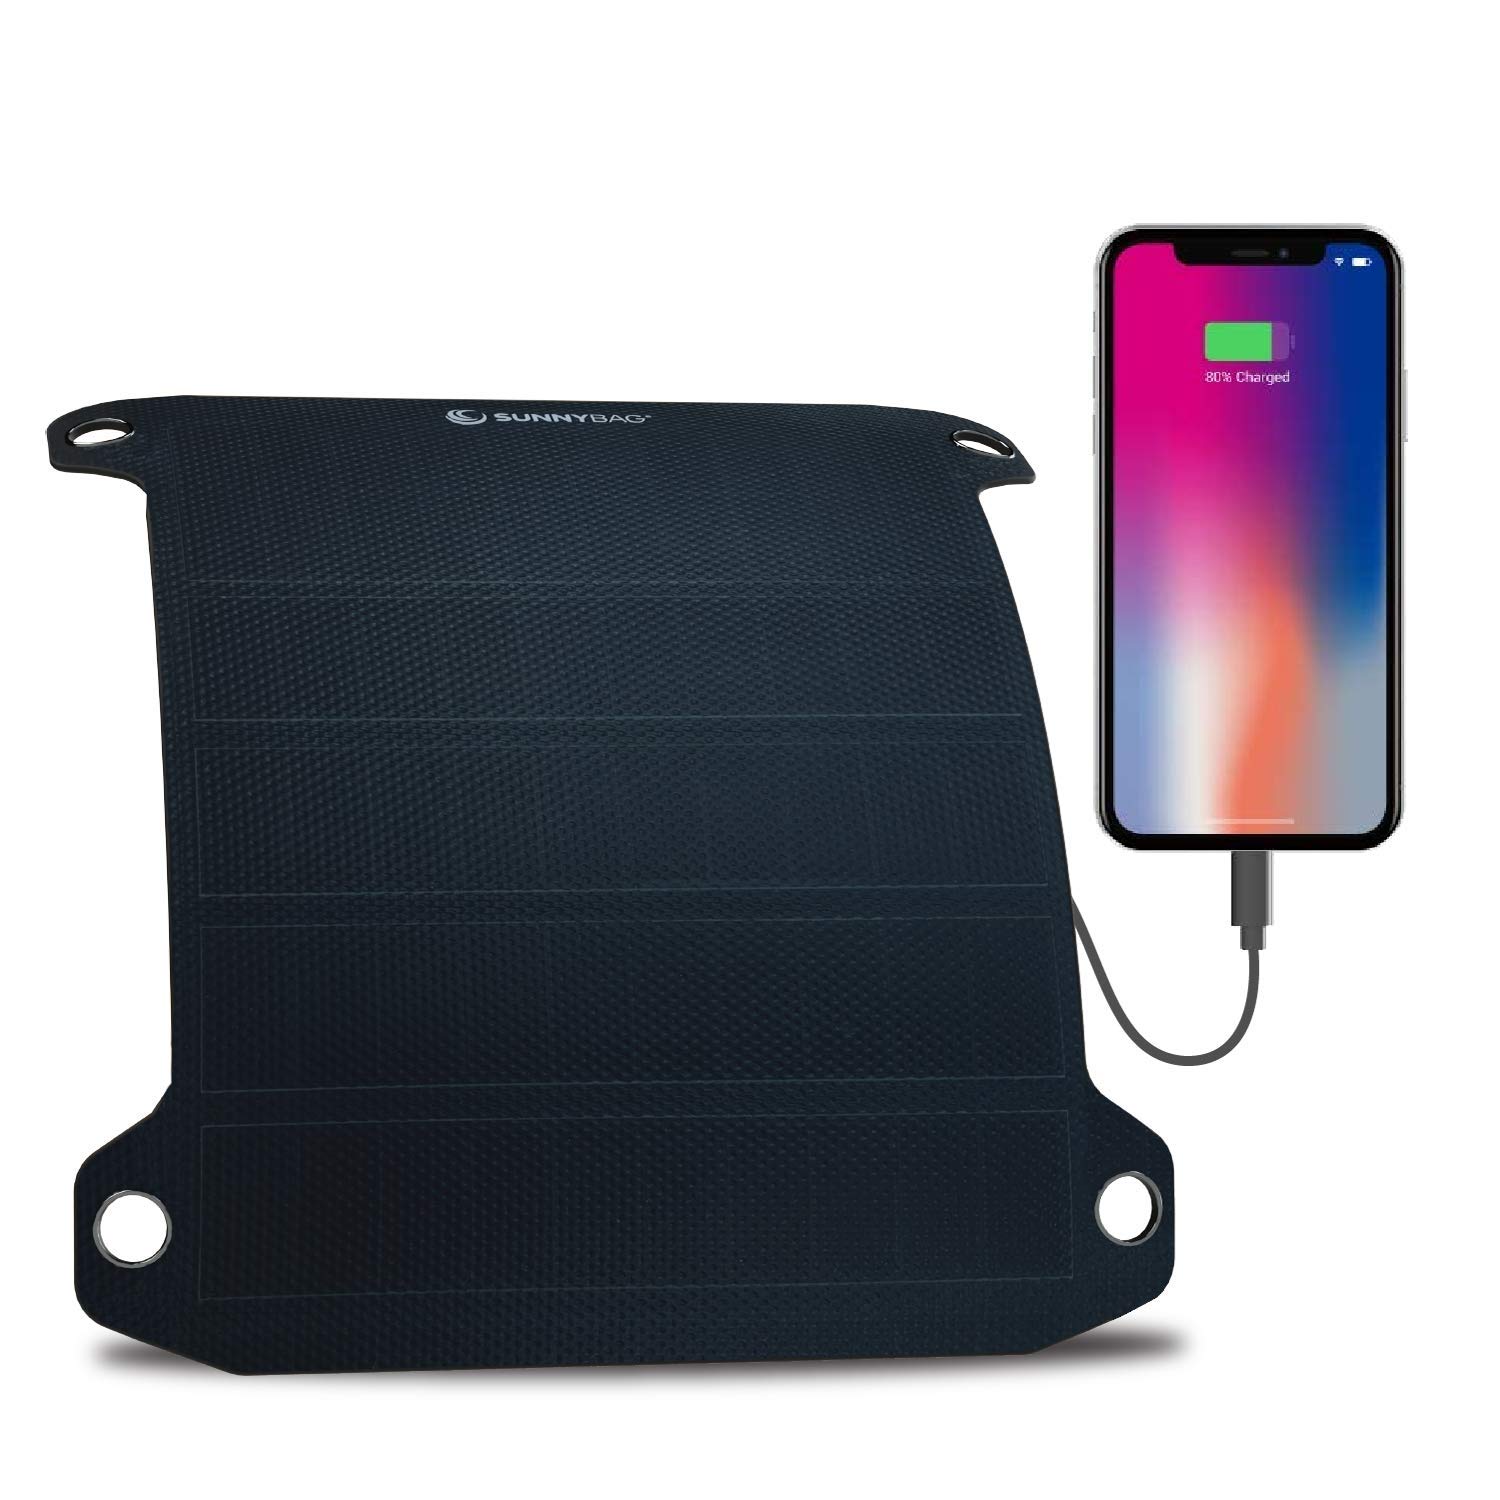 Pannello Solare Flessibile - Caricabatterie